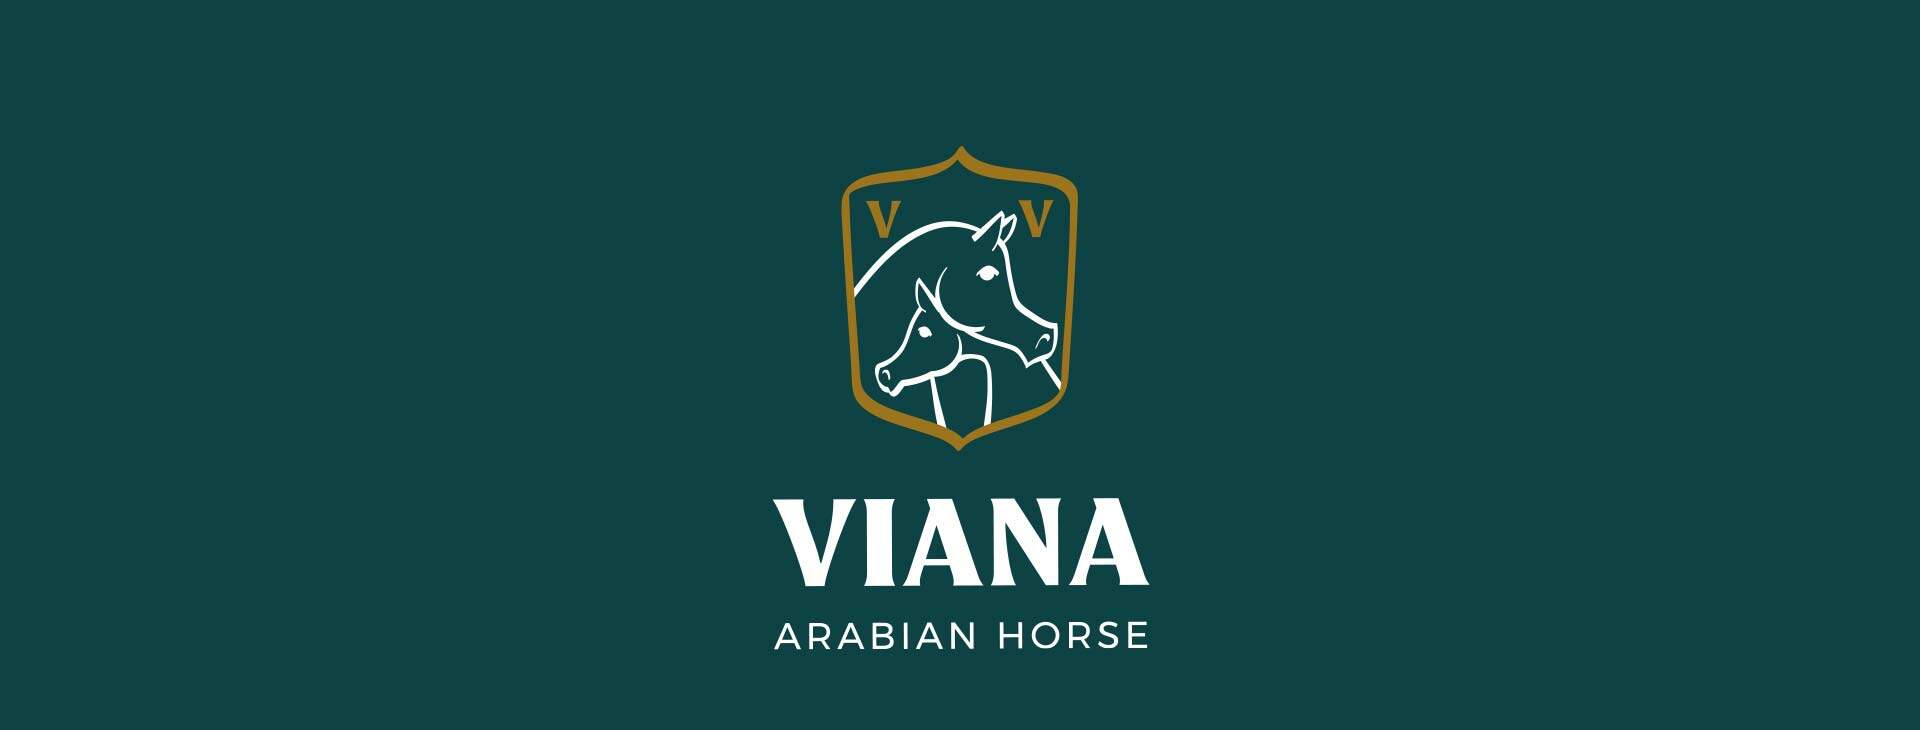 Identidade Visual para Viana Arabian Horse por Lampejos